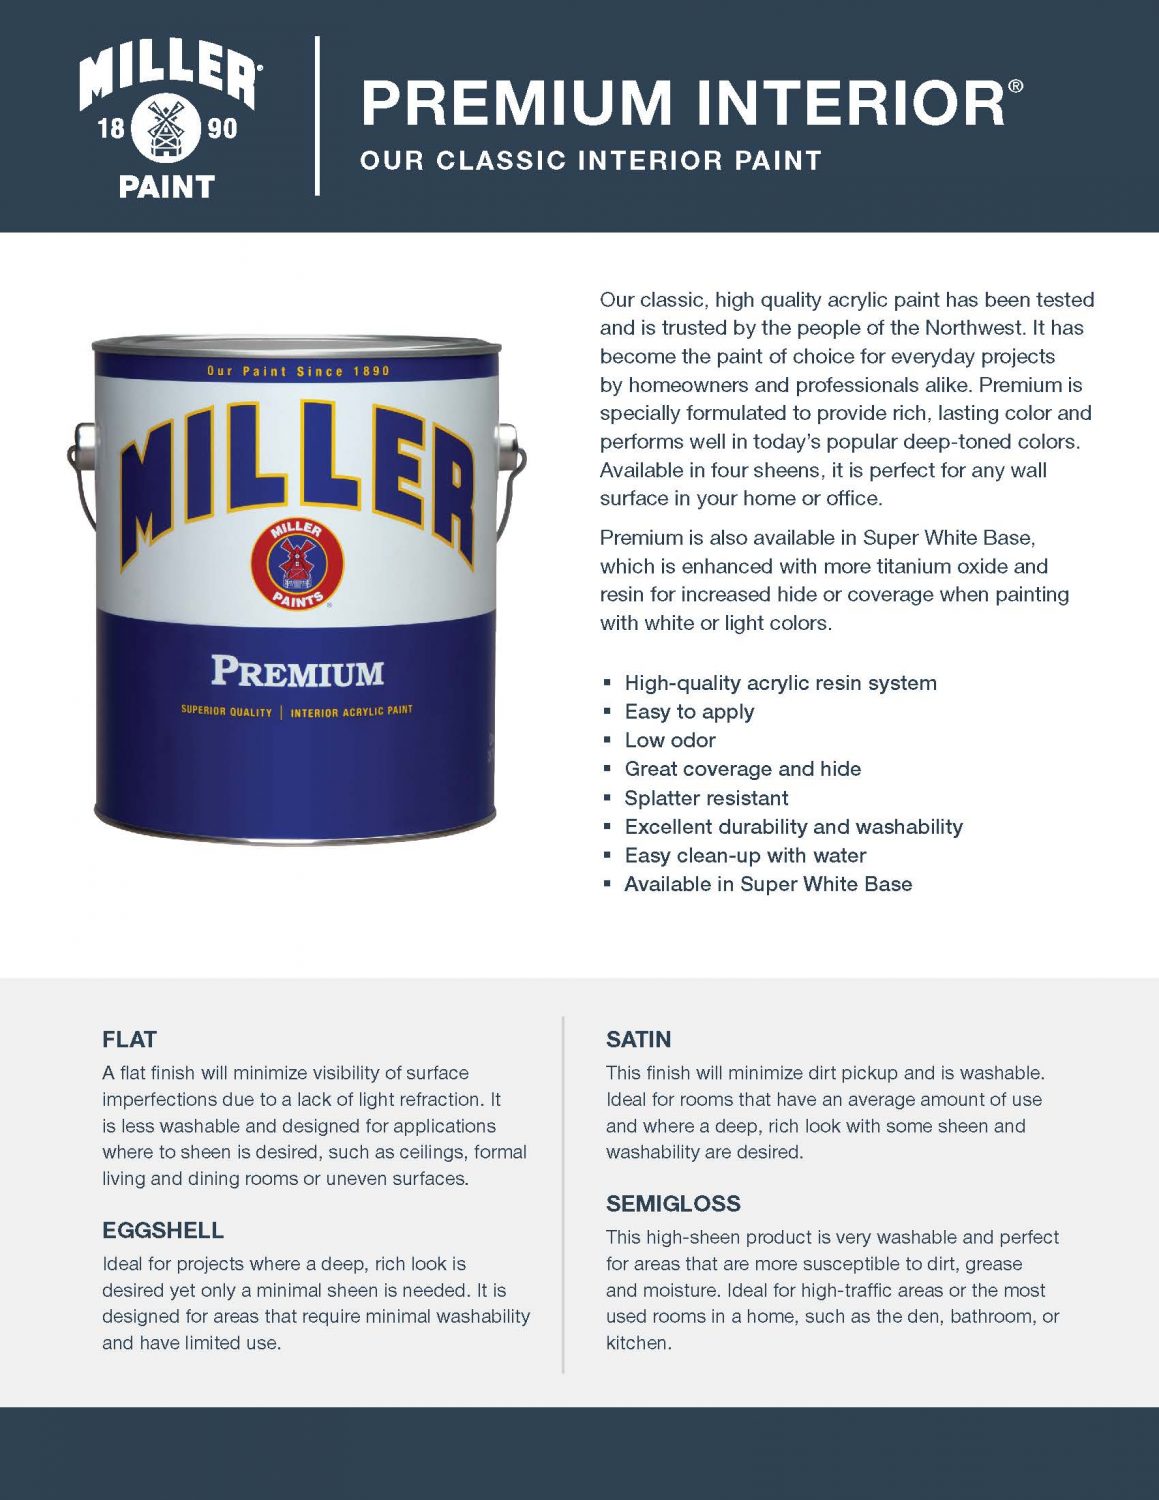 Miller Paint Premium Interior Brochure